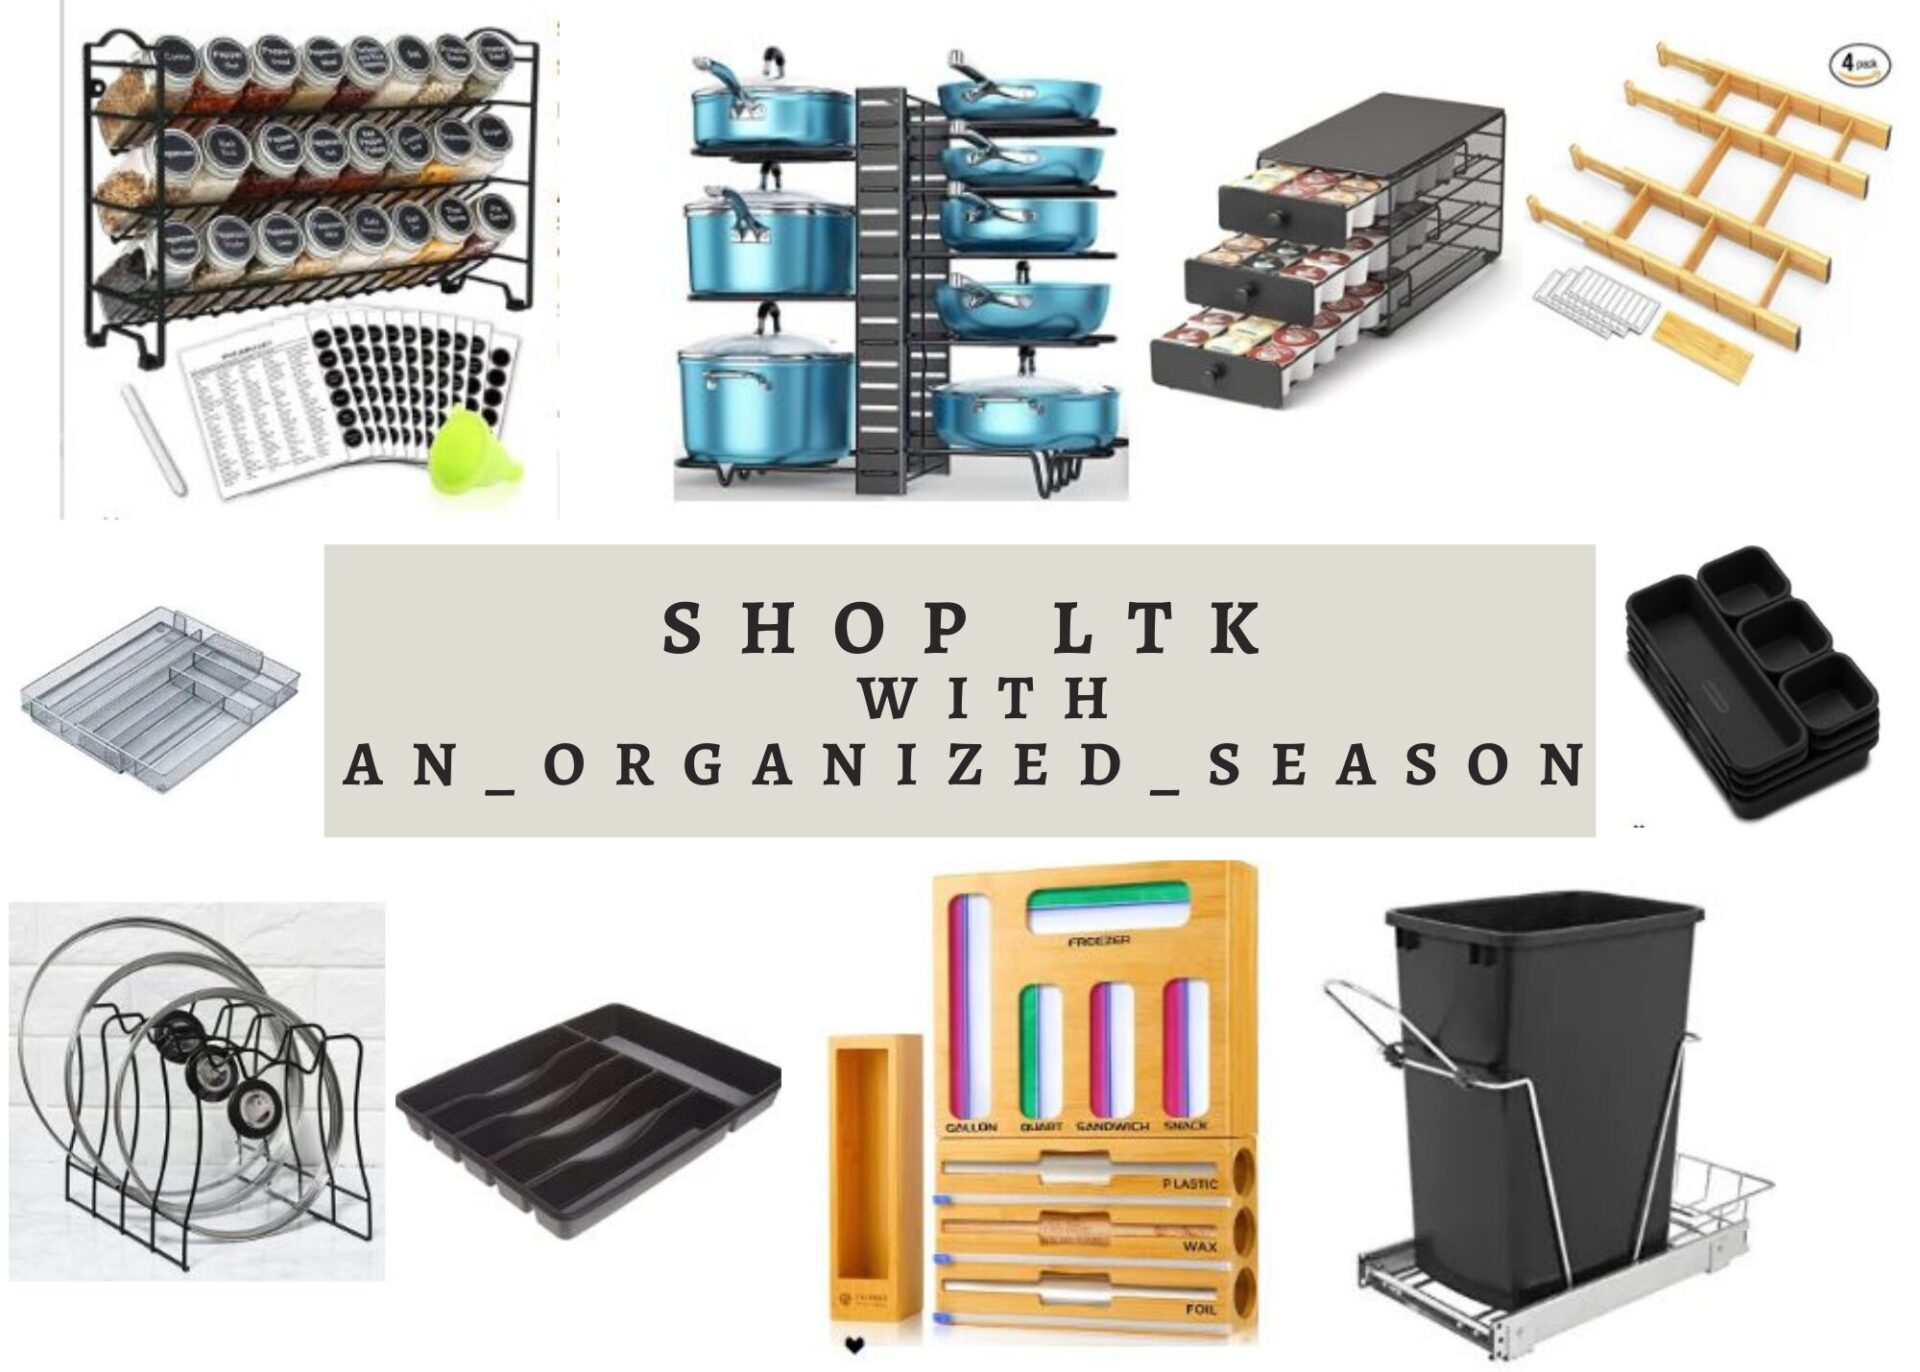 shop ltk for home organization